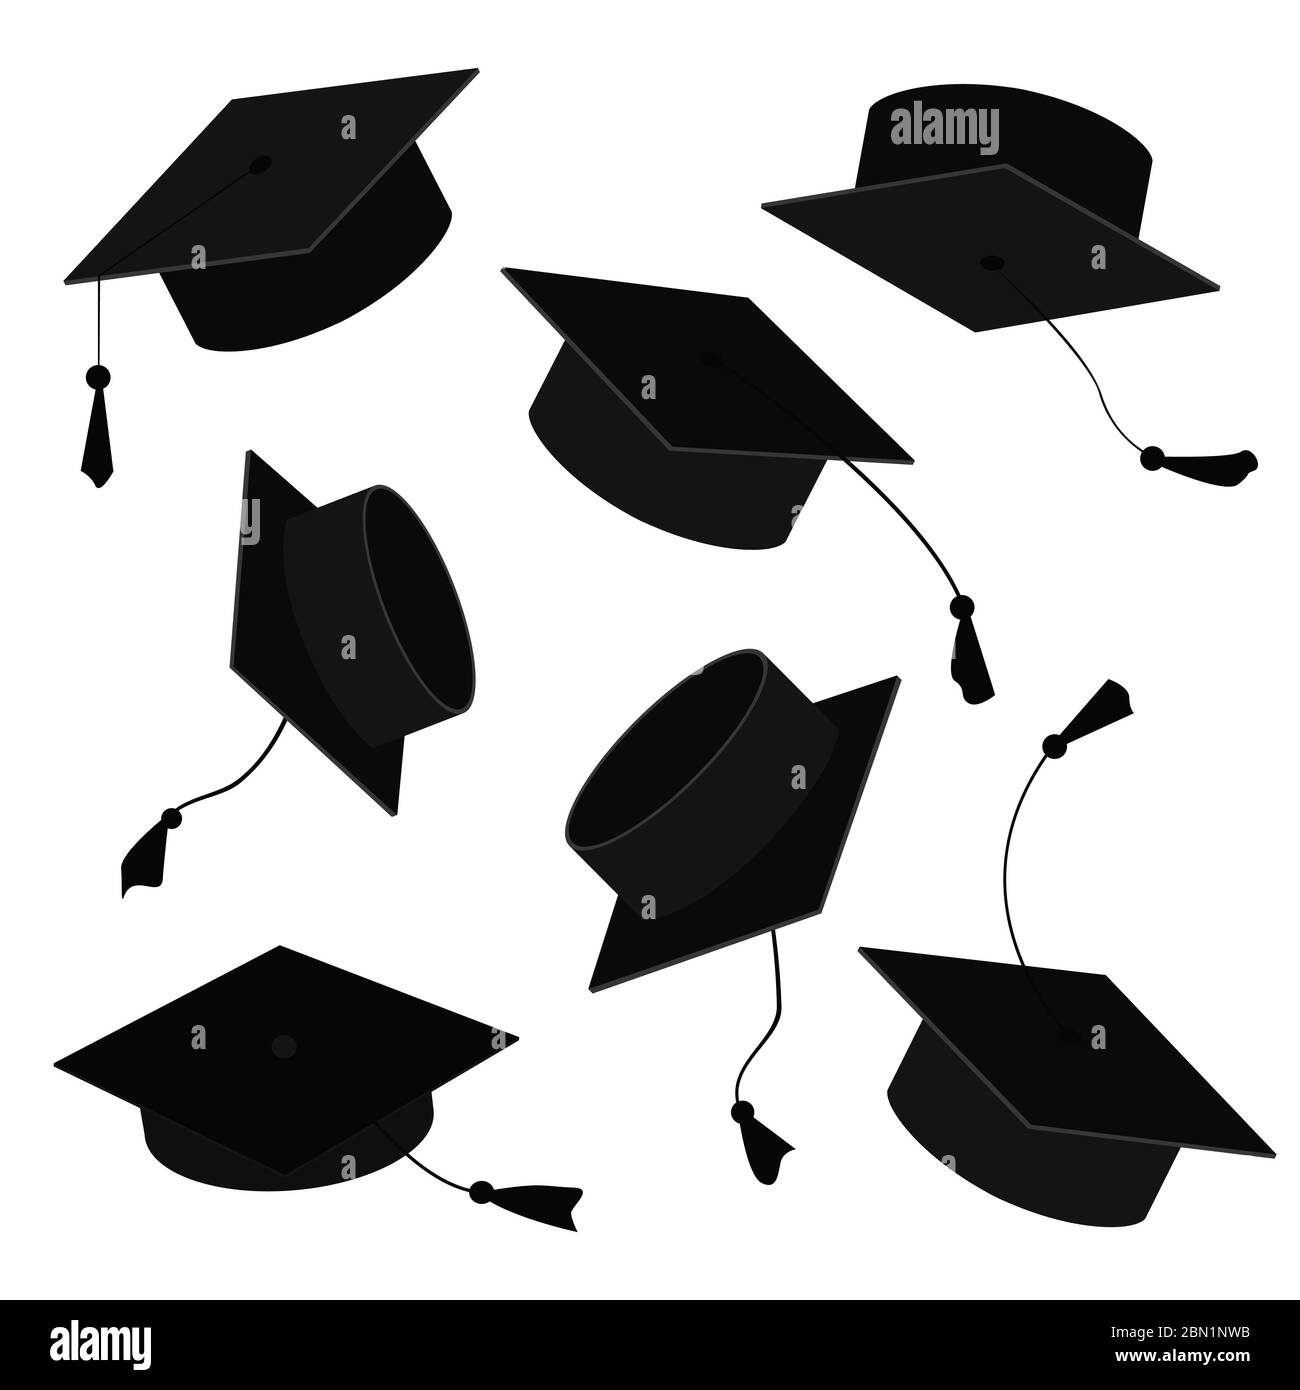 Tappi graduati in aria. Cartoni animati vettoriali raffigurazione di cappelli grad in diverse posizioni isolati su sfondo bianco Illustrazione Vettoriale